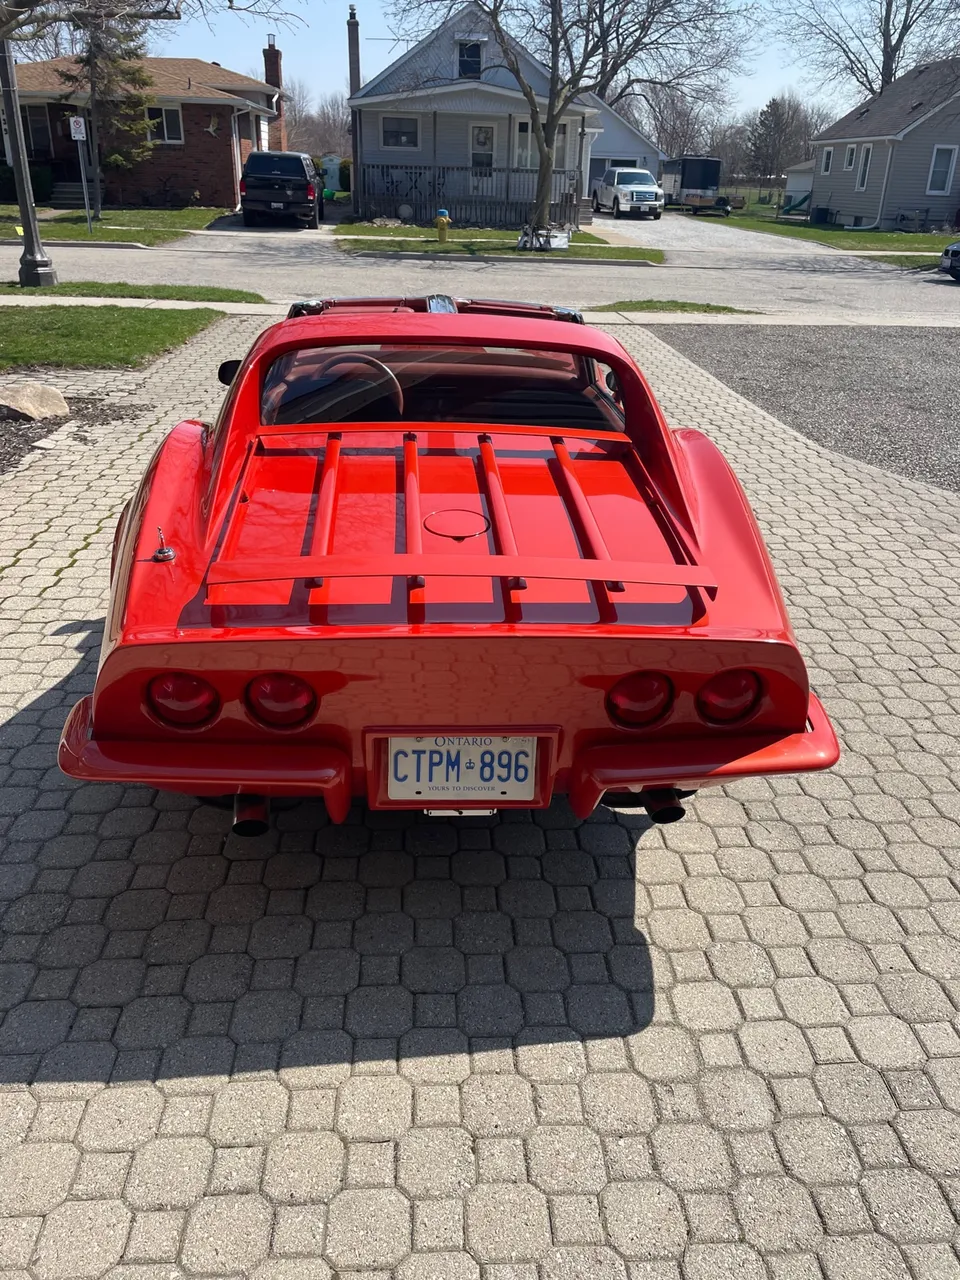 1972 corvette